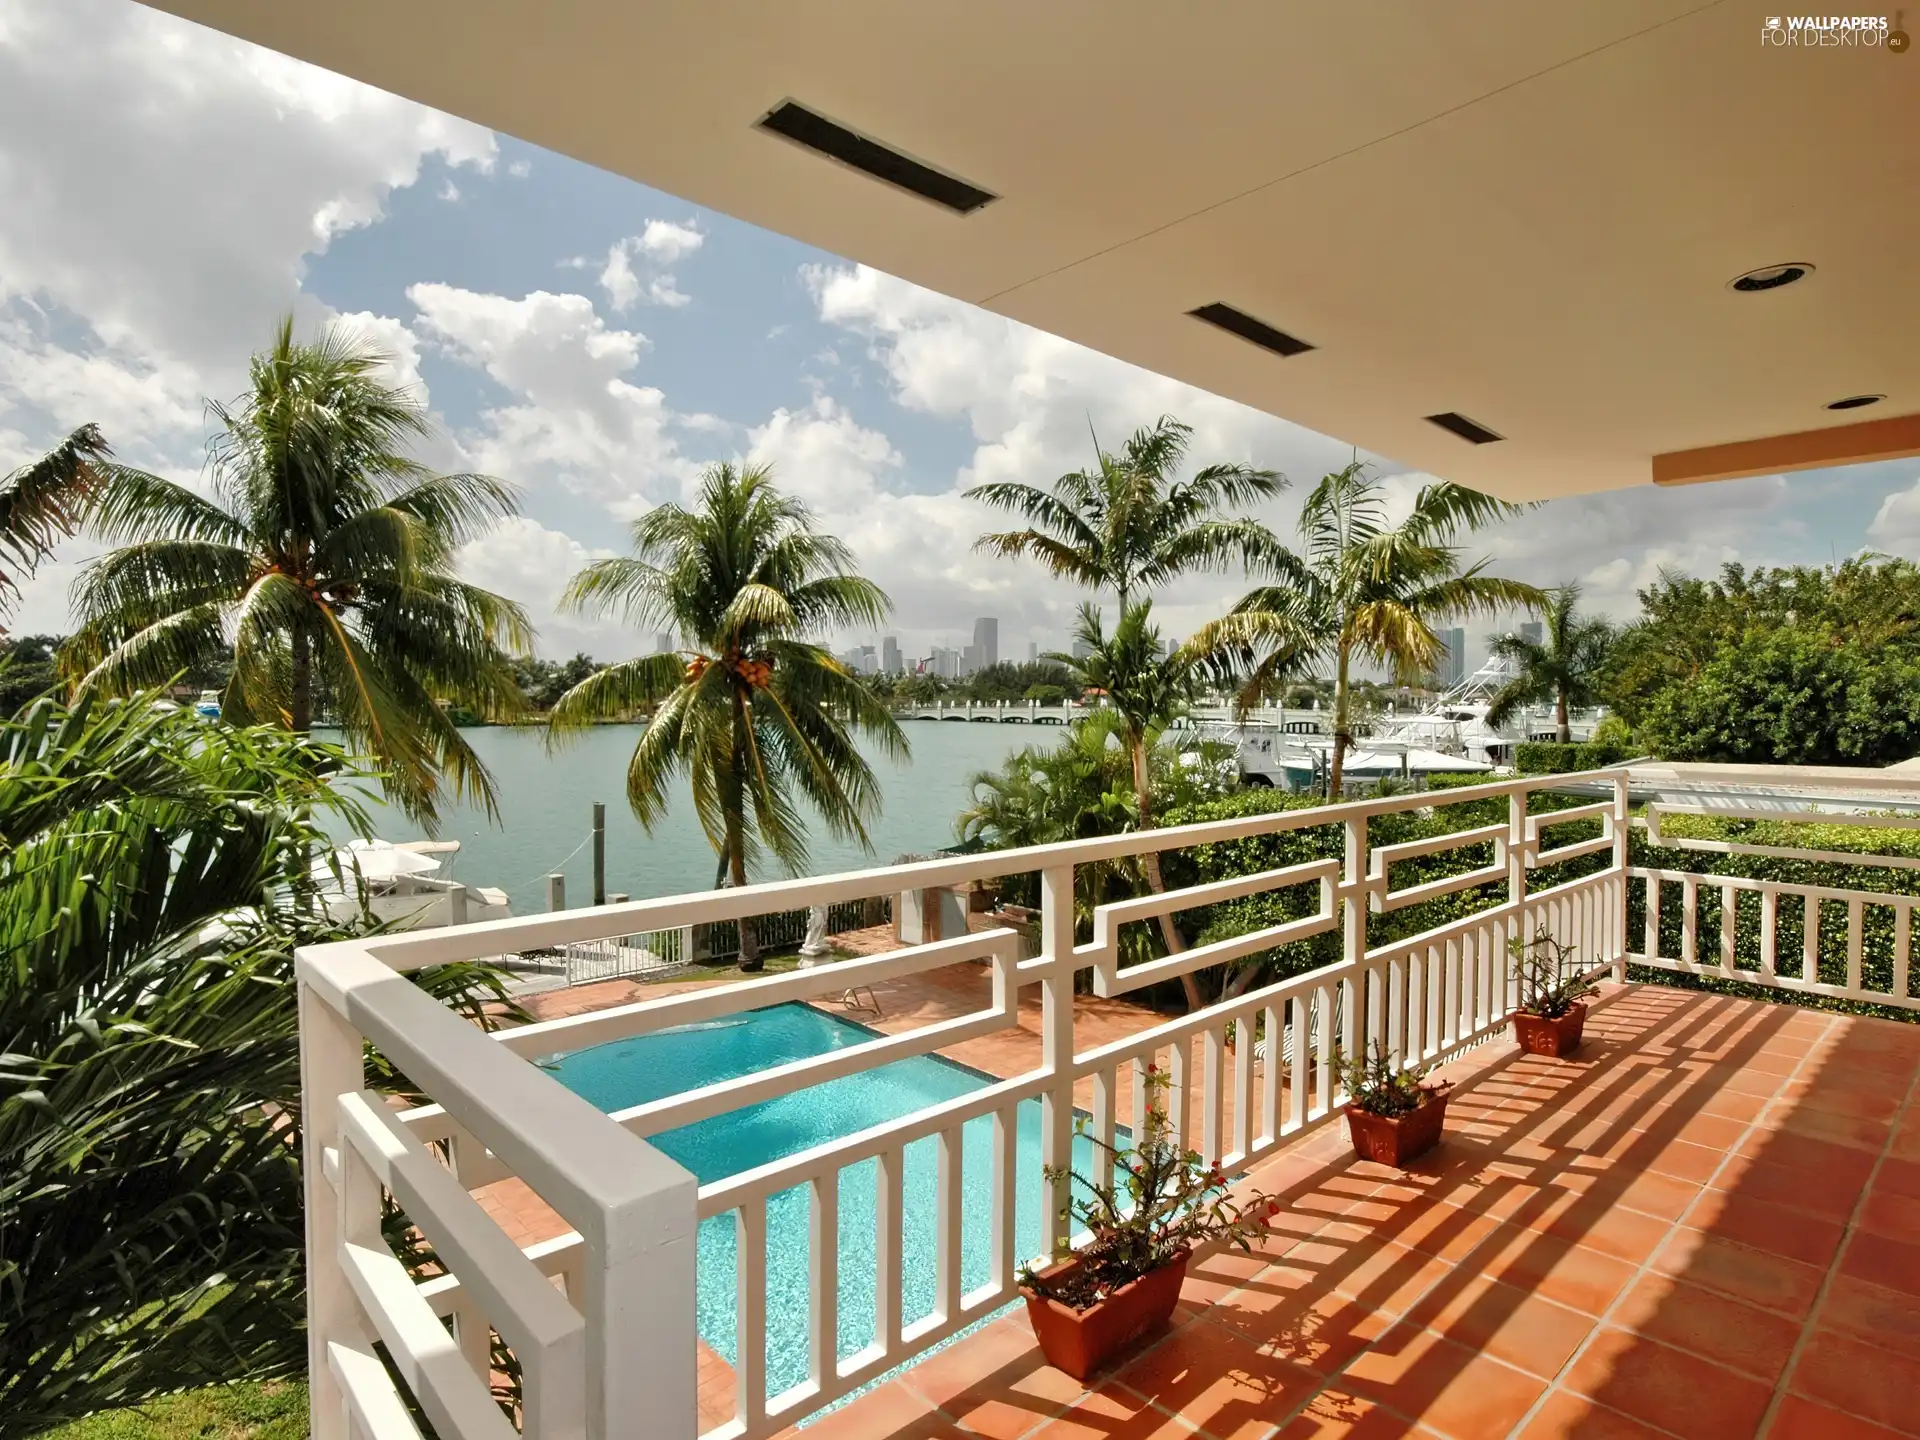 View, Balcony, Palms